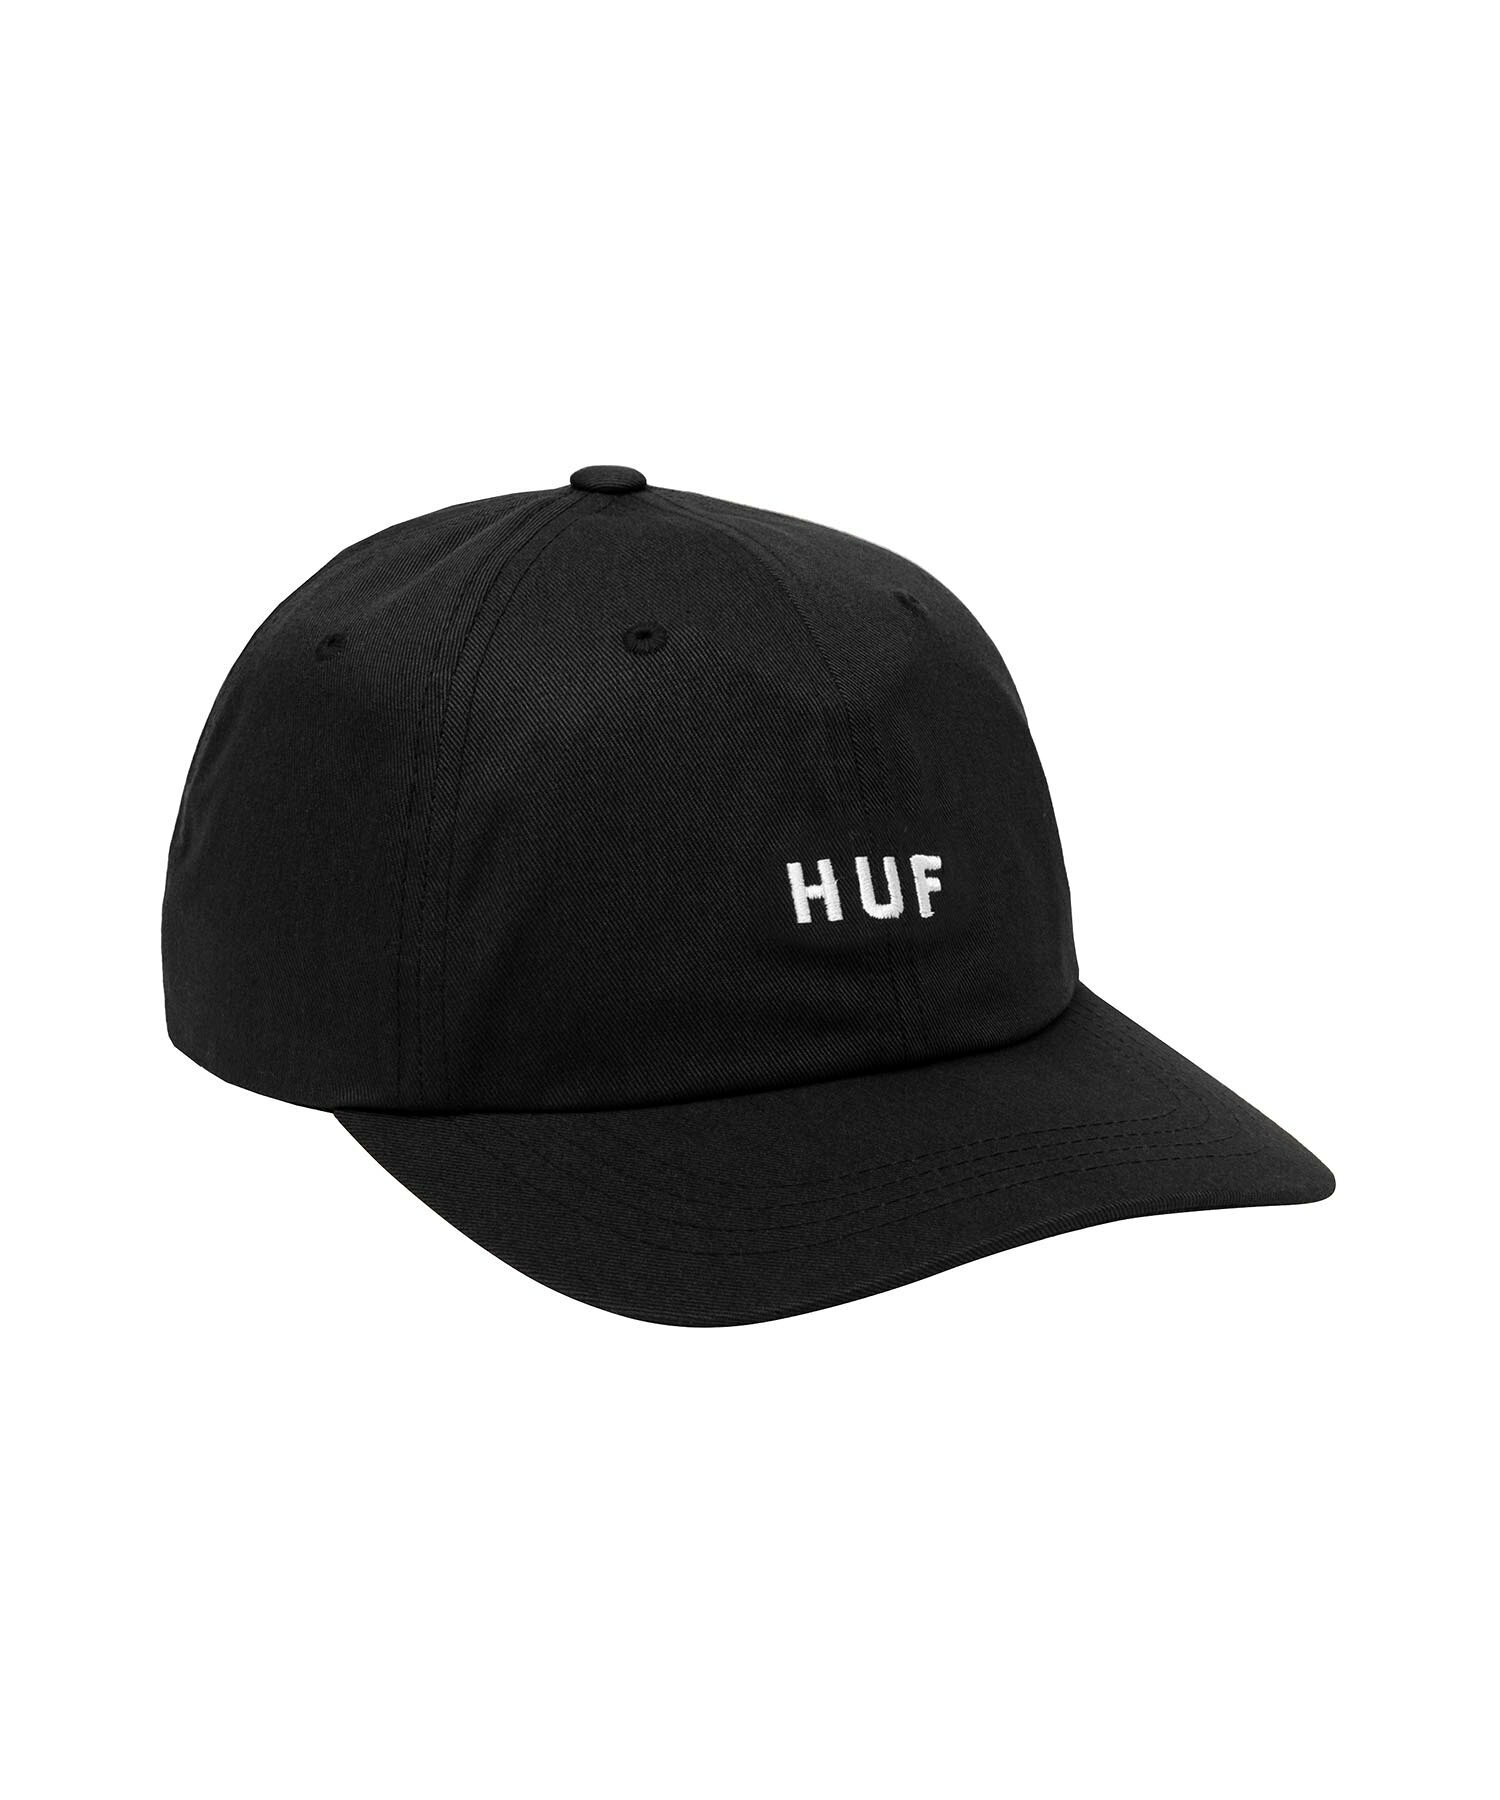 HUF SET OG CV 6 PANEL HAT ロゴ キャップ 帽子